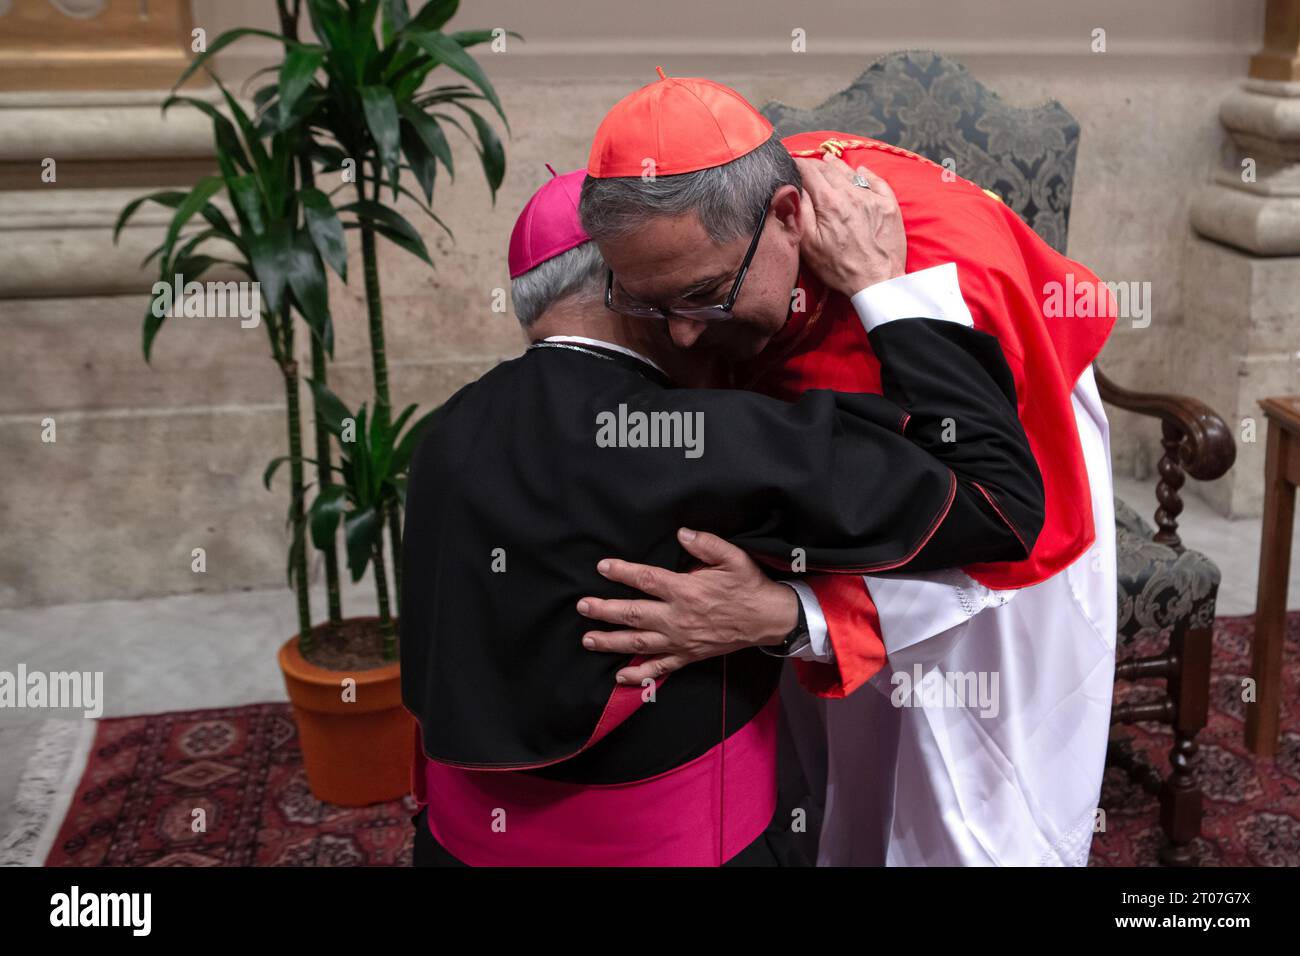 Pope Francis Appoints Colombian Archbishop Luis José Rueda Aparicio as  Cardinal